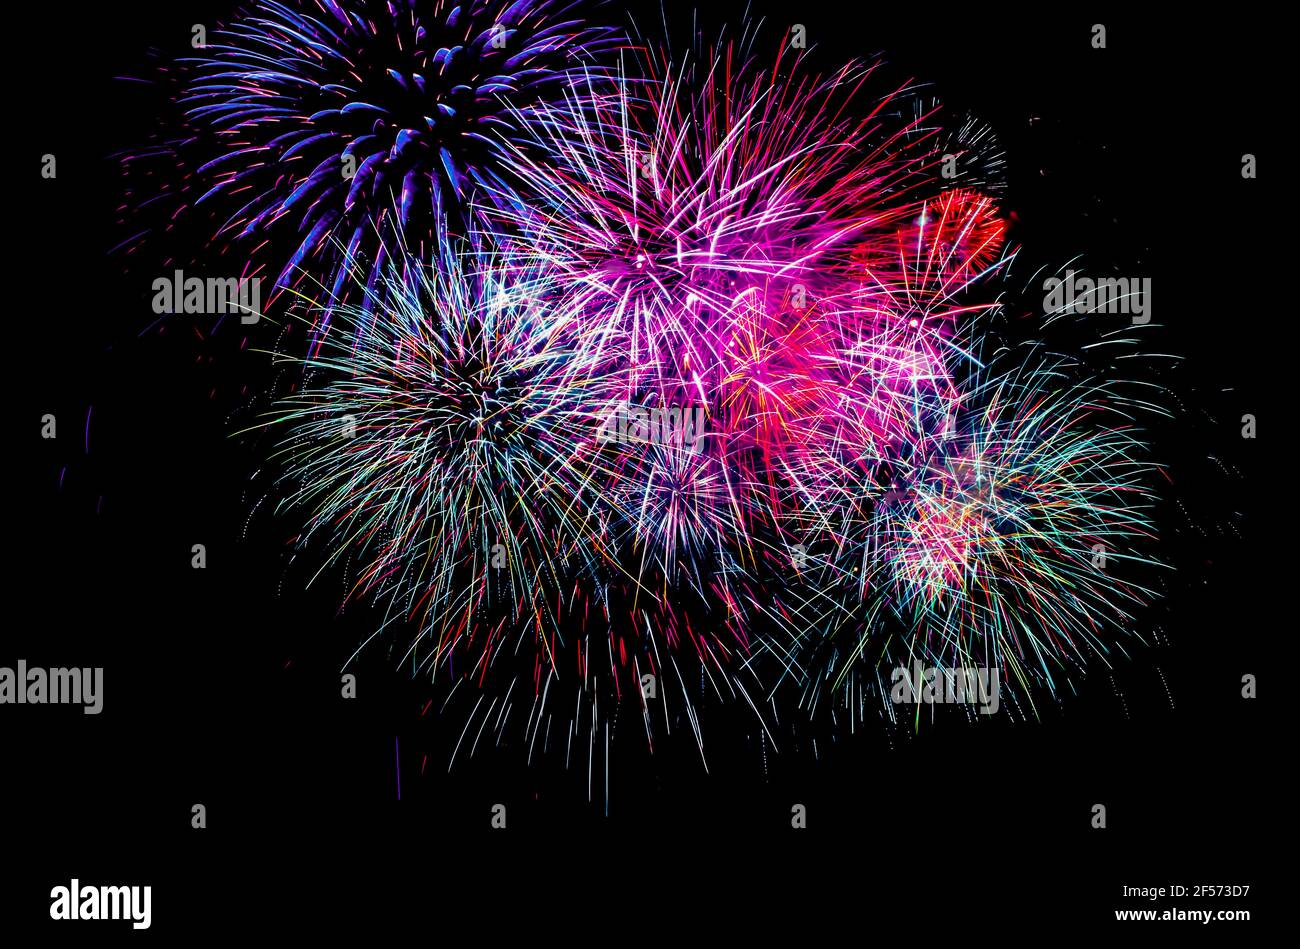 Fireworks in the dark night sky - black background Stock Photo